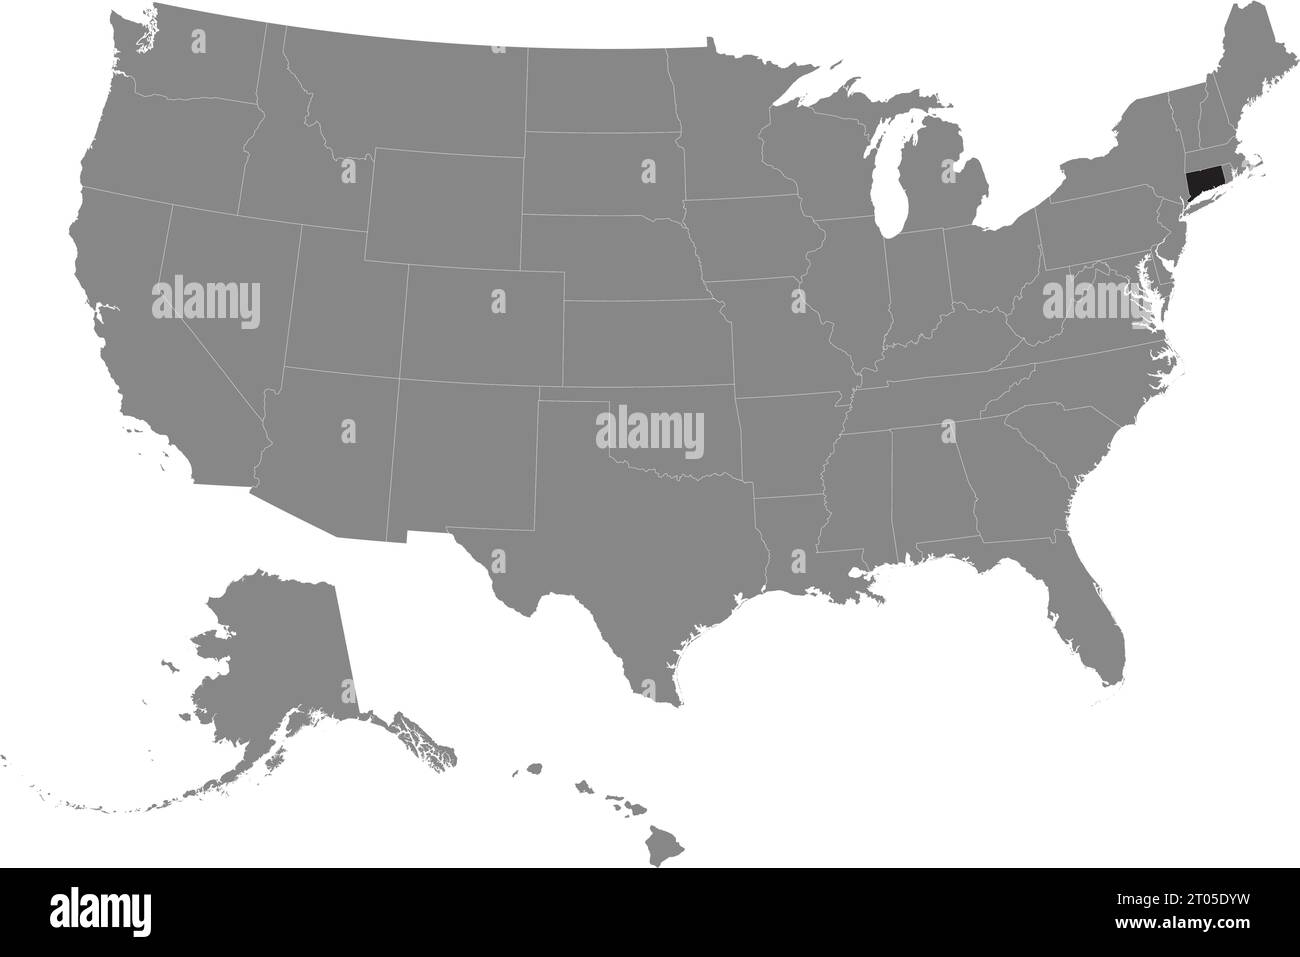 Carte fédérale CMJN noire du CONNECTICUT à l'intérieur de la carte politique blanche grise détaillée des États-Unis d'Amérique sur fond transparent Illustration de Vecteur